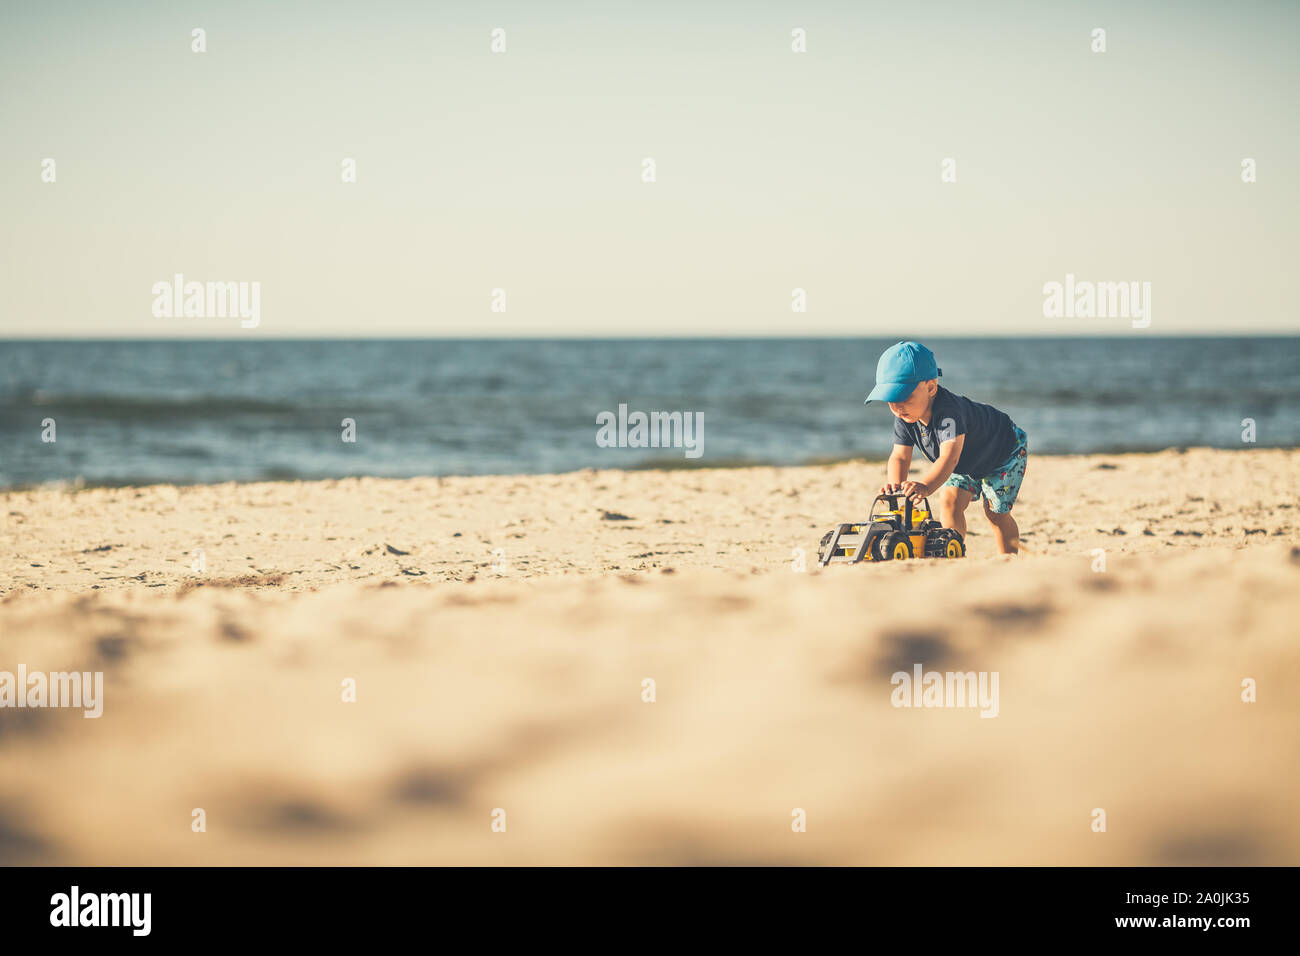 Toddler Boy mit Spielzeug spielen an einem sonnigen Strand. Kleines Kind gehen auf Sand. Schöne inspirierende Strand und Blick aufs Meer, Landschaft. Stockfoto